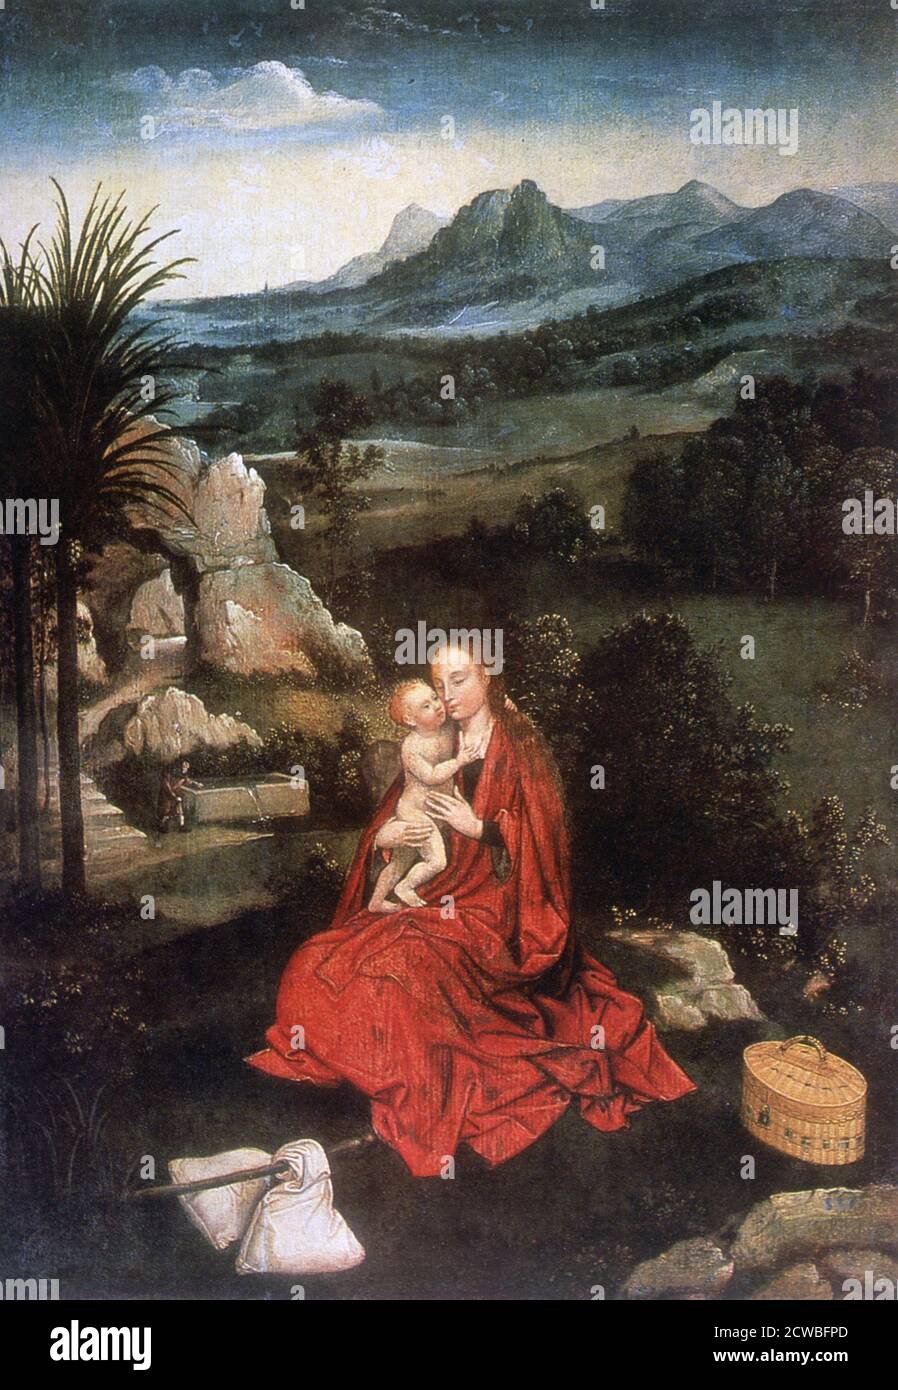 Le reste sur le vol vers l'Egypte', (détail), c1500-1524. Artiste: Joachim Patinir. Joachim Patinir (1480-1524) est un peintre de la Renaissance flamande de sujets d'histoire et de paysage. Banque D'Images